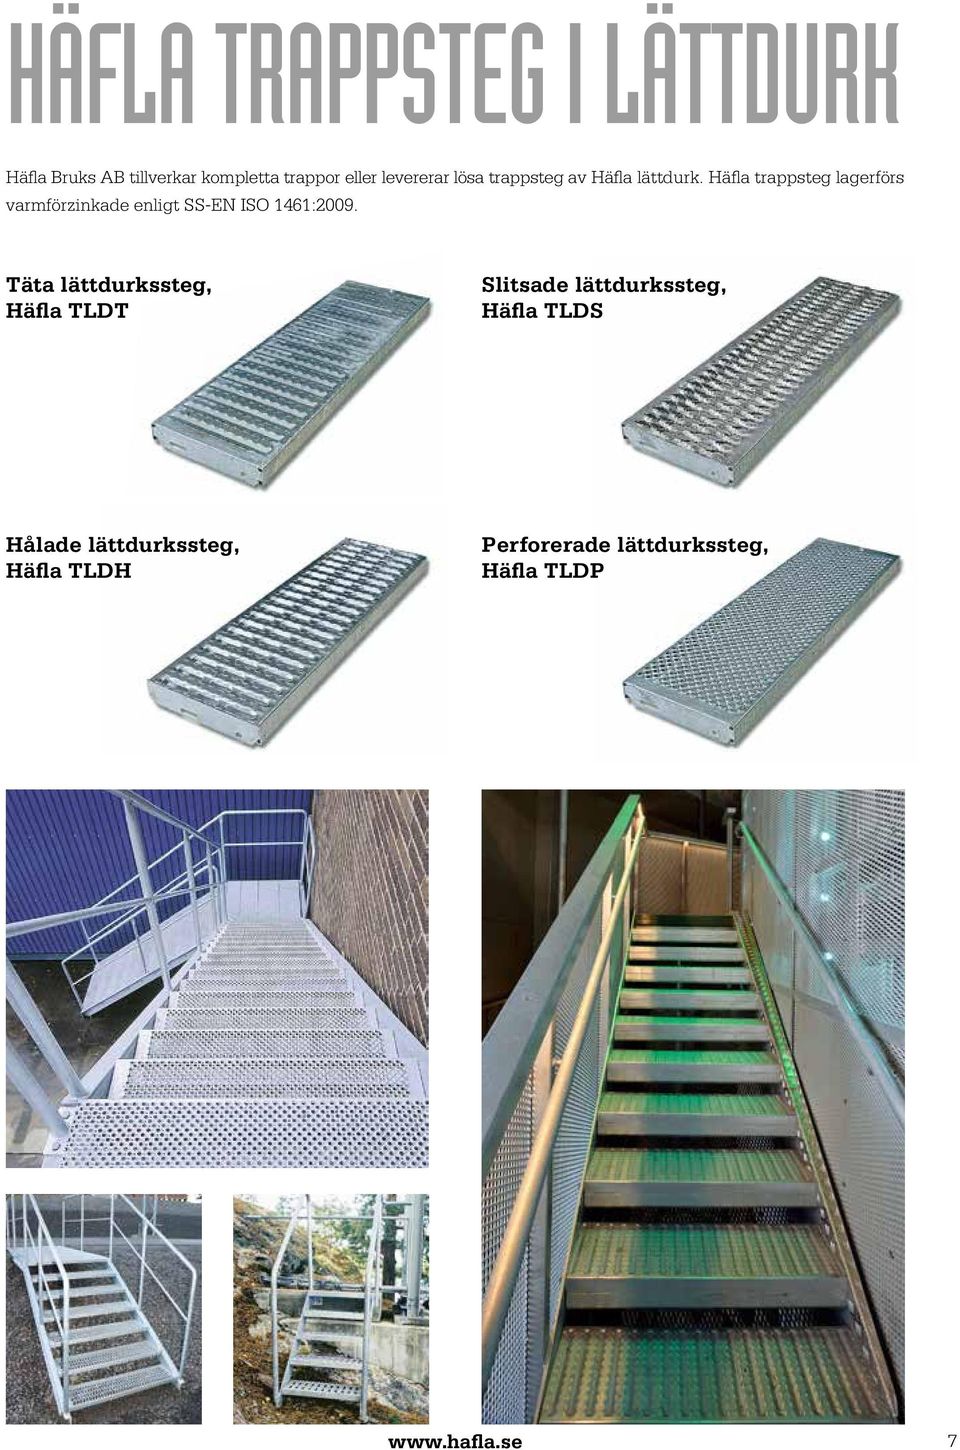 Häfla trappsteg lagerförs varmförzinkade enligt SS-EN ISO 1461:2009.